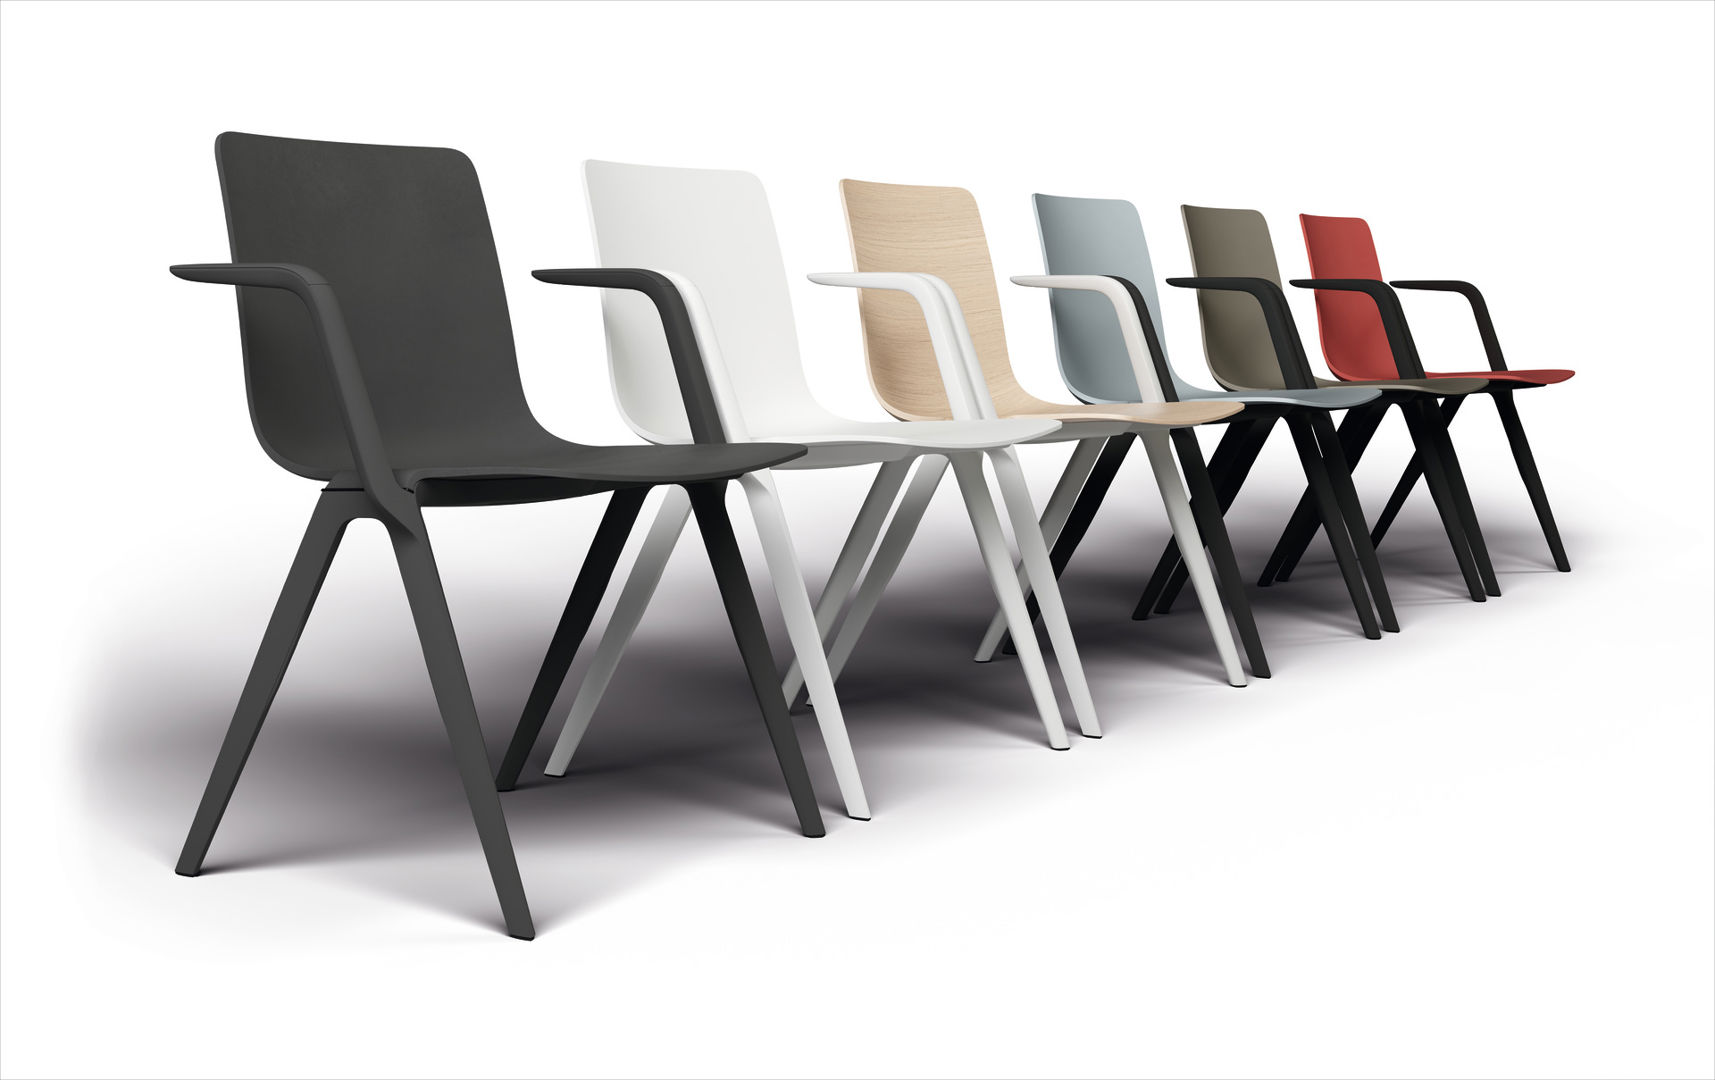 Brunner A- Chair Stuhl farbig schwarz rot weiß türkis eiche Wartezimmer Wartebereich Praxis